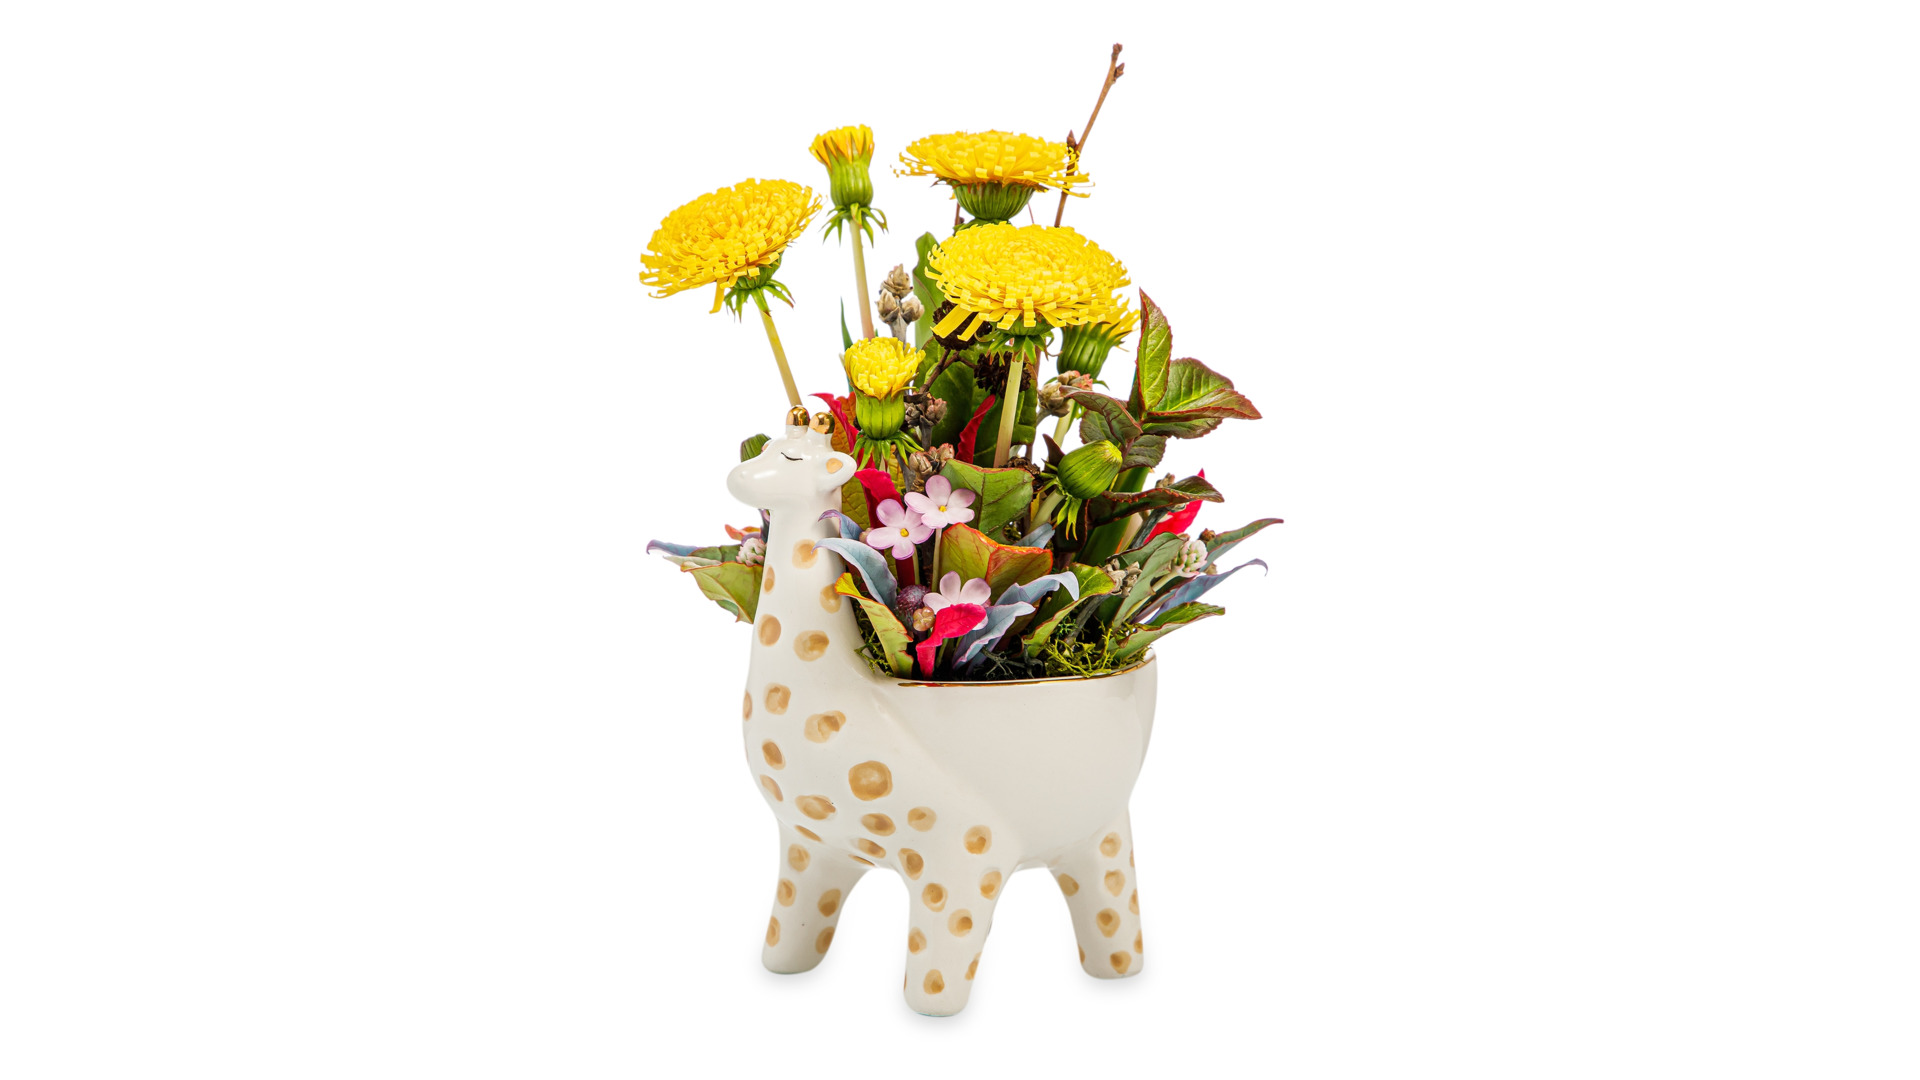 Одуванчики с полевыми цветами и травами из холодного фарфора в керамическом кашпо жираф